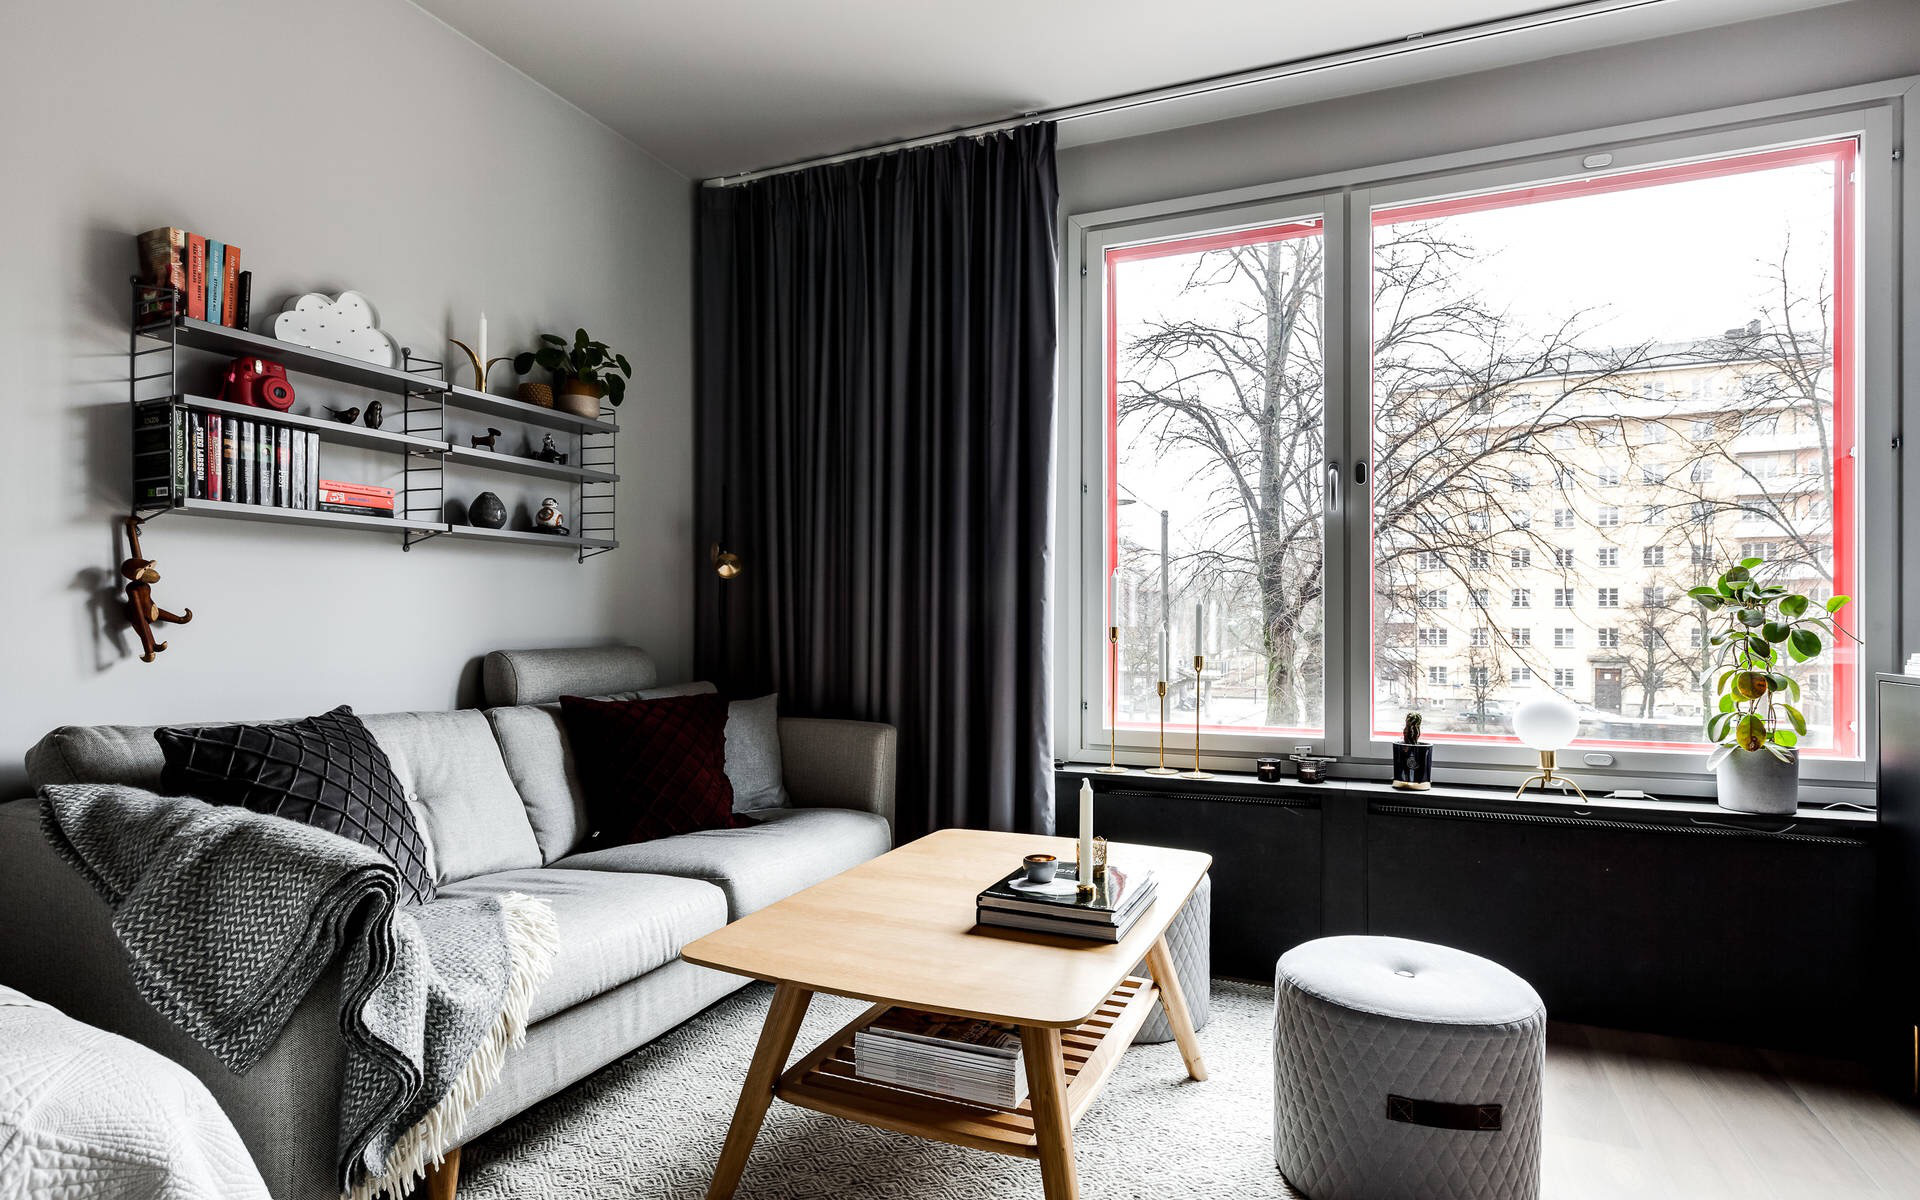 Chỉ vỏn vẹn 30m² nhưng căn hộ nhỏ này đem lại cuộc sống tiện nghi với điểm nhấn màu đen rất cá tính 